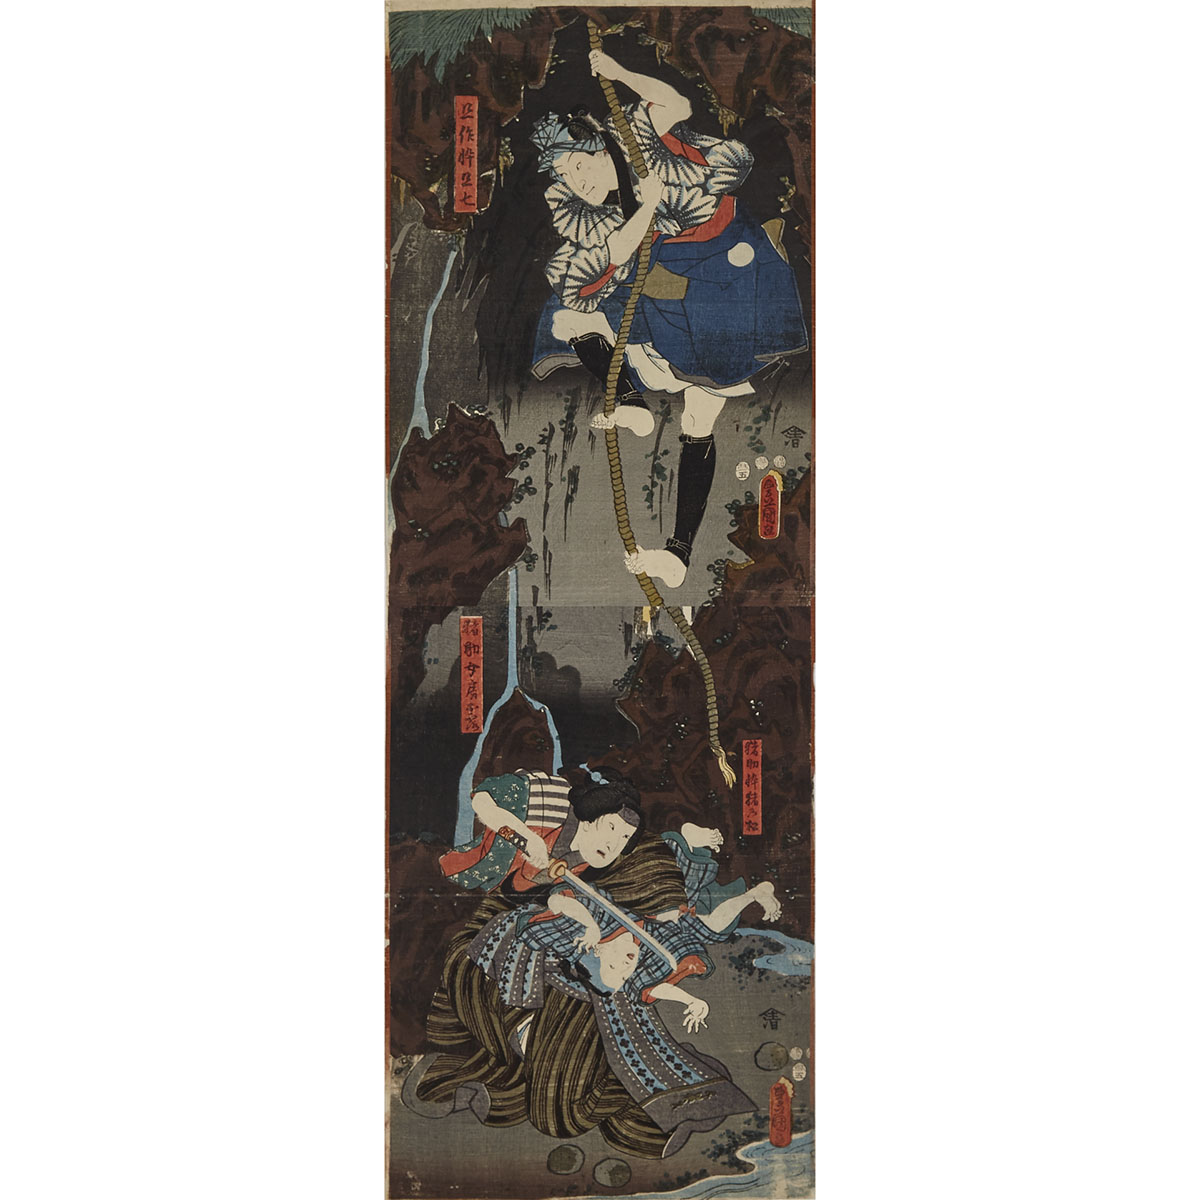 Utagawa Kunisada (Toyokuni III, 1786-1864)